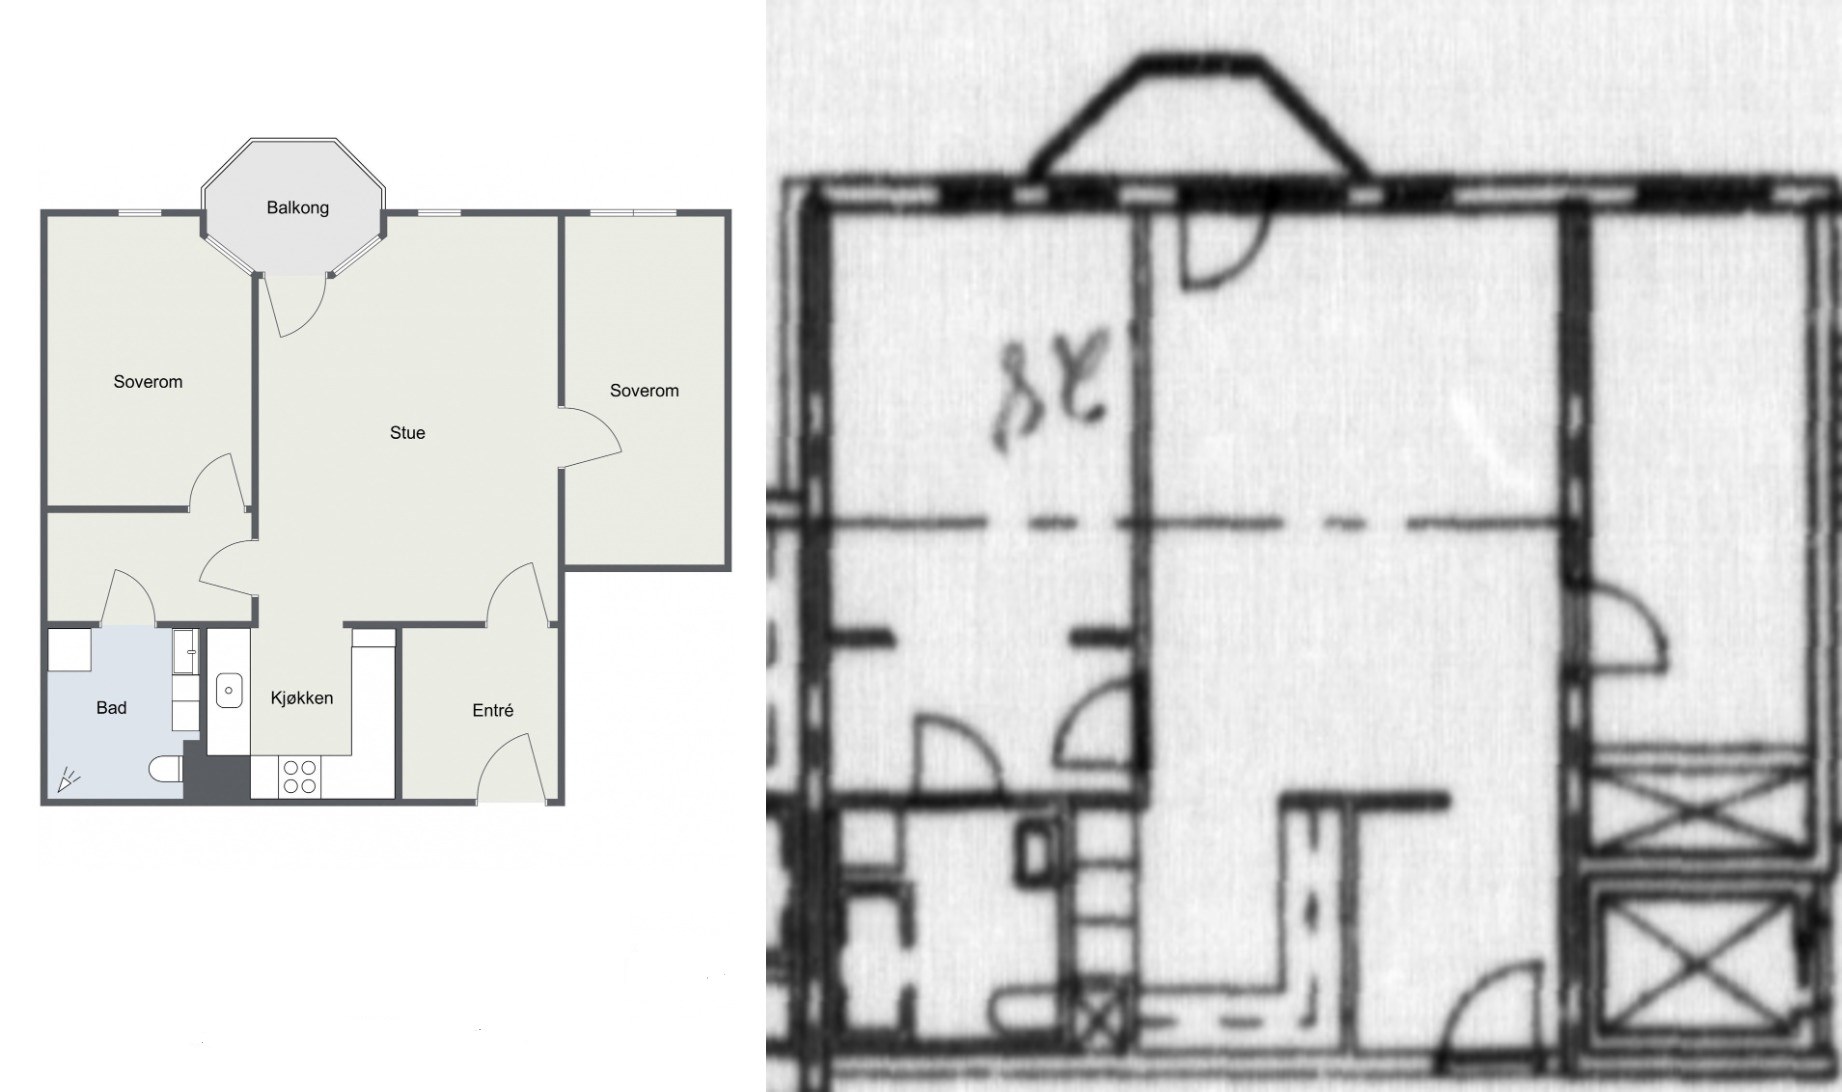 Kjøpt ny leilighet - "ikke i samsvar med byggegodkjente tegninger" - 123.jpg - Sriracha_saus